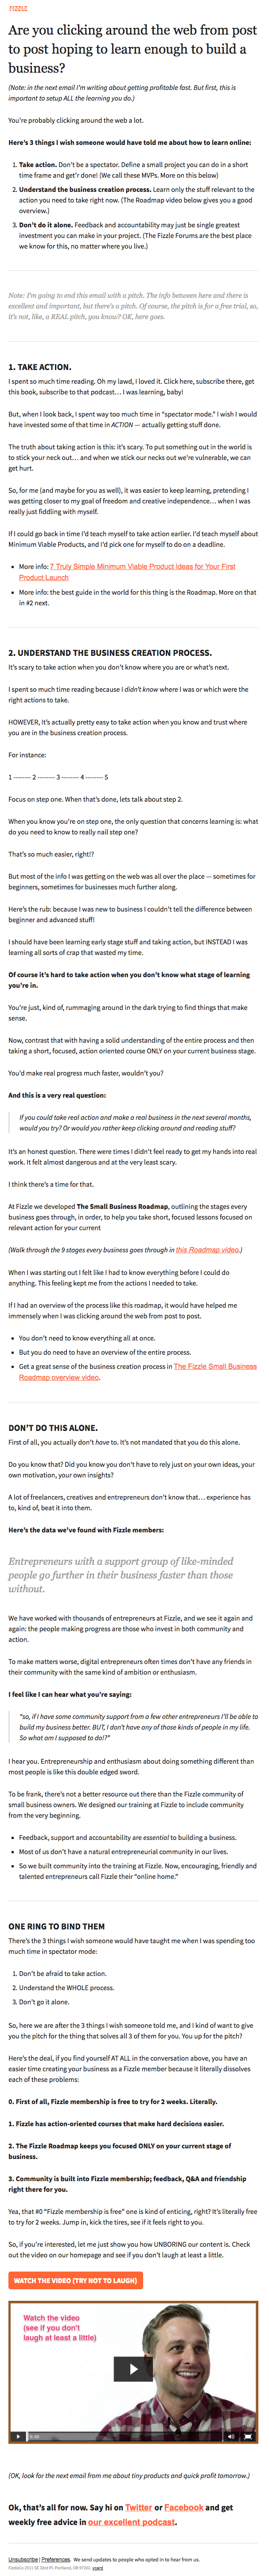 Fizzleによる起業家精神のヒントと電子メールニュースレターの例のデザイン